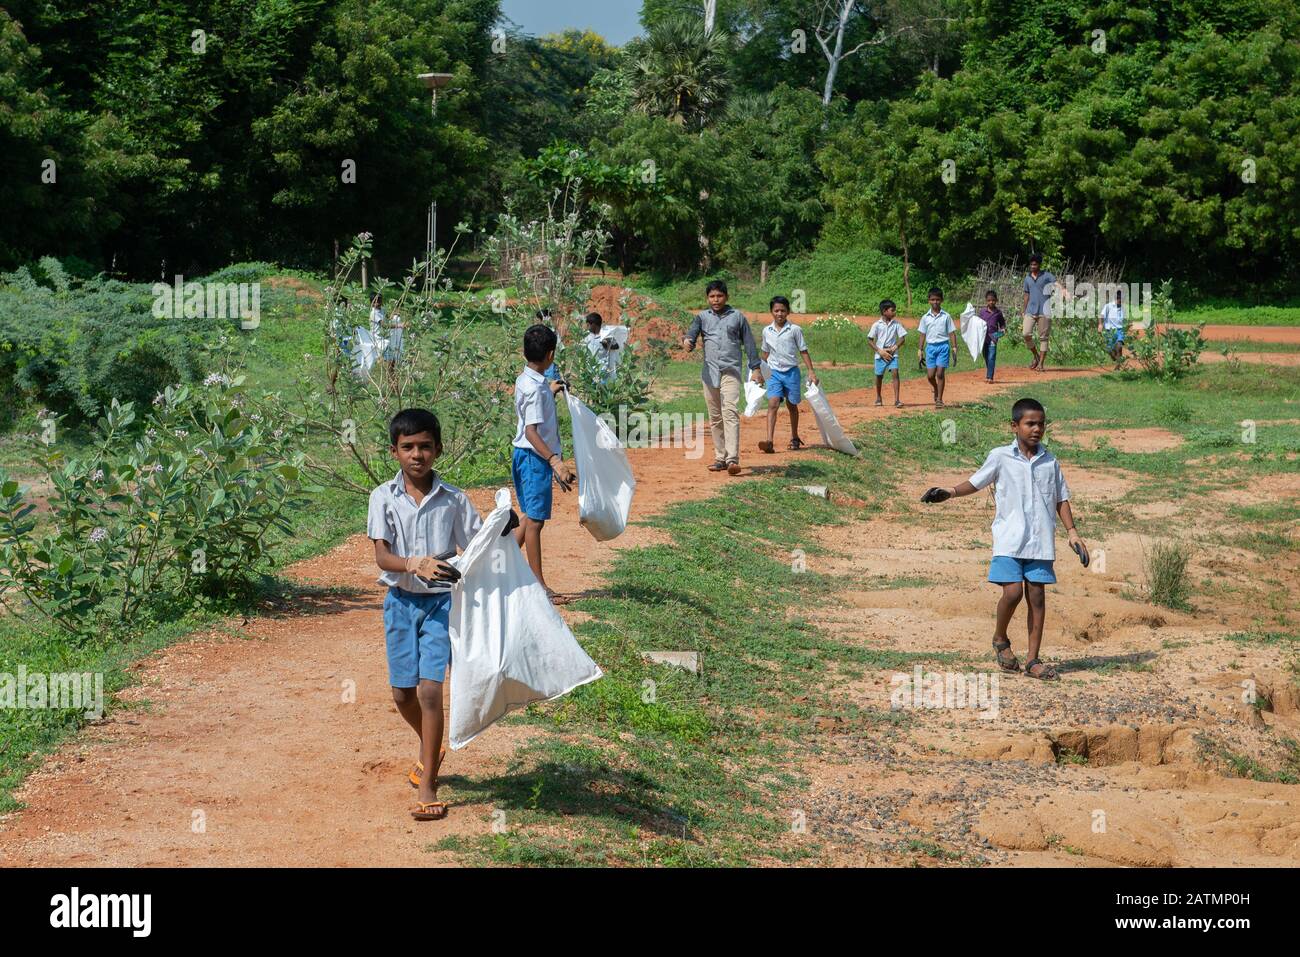 Auroville, India - 21st Settembre 2019: Giornata Mondiale Di Pulizia. I bambini e gli insegnanti puliscono la zona intorno alla scuola raccogliendo tutti i rifiuti. Foto Stock